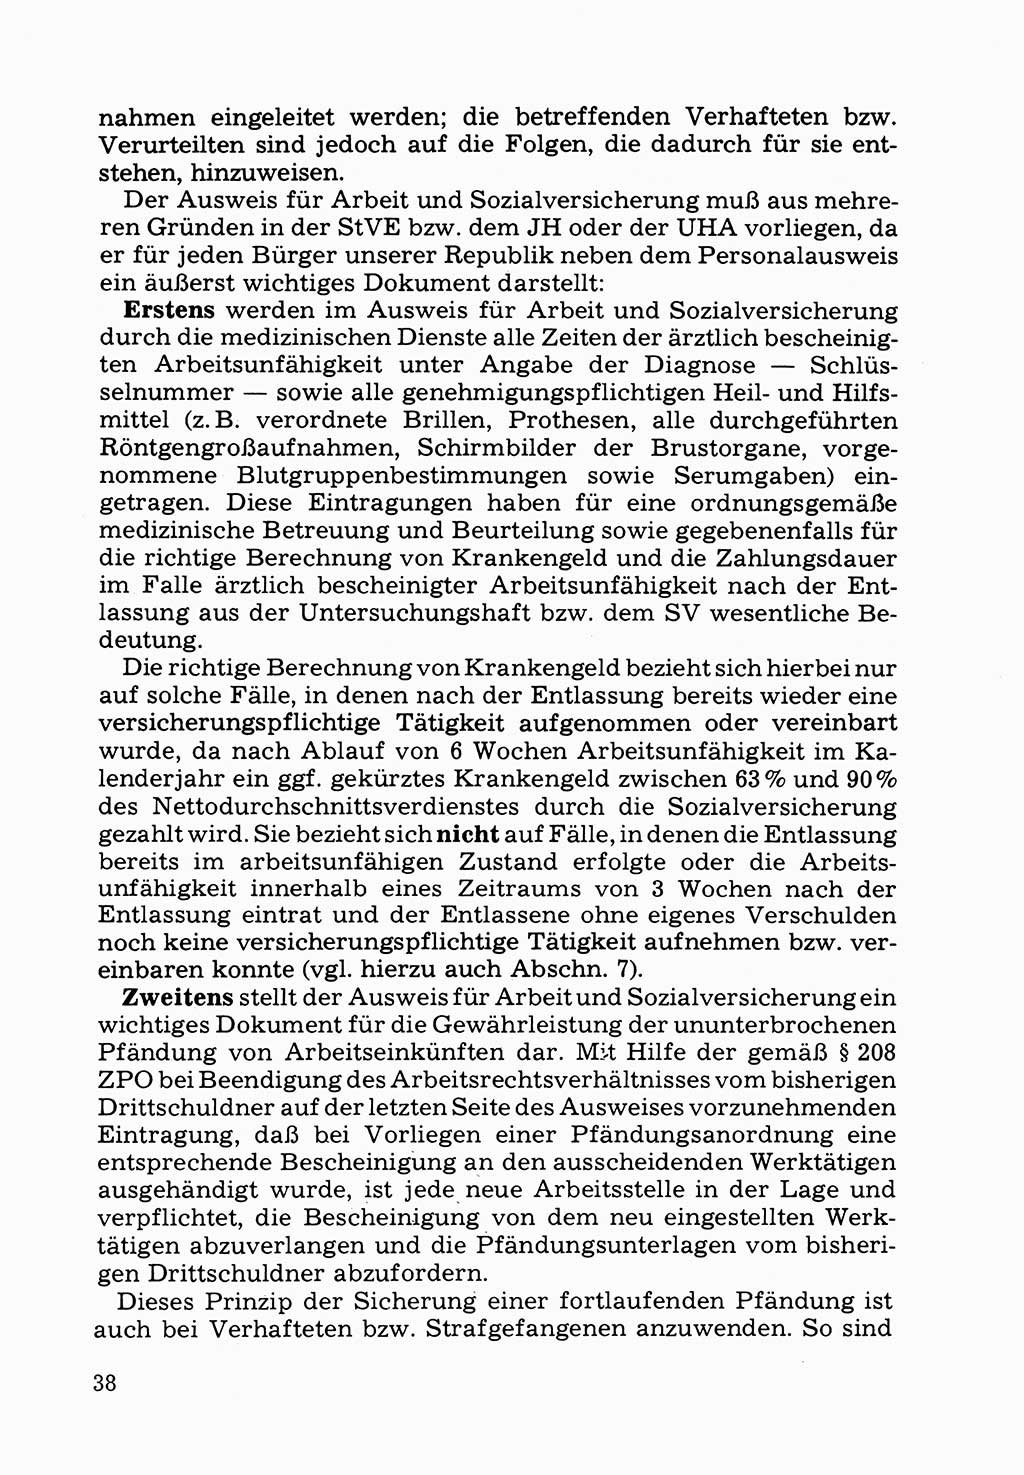 Verwaltungsmäßige Aufgaben beim Vollzug der Untersuchungshaft (U-Haft) sowie der Strafen mit Freiheitsentzug (SV) [Deutsche Demokratische Republik (DDR)] 1980, Seite 38 (Aufg. Vollz. U-Haft SV DDR 1980, S. 38)